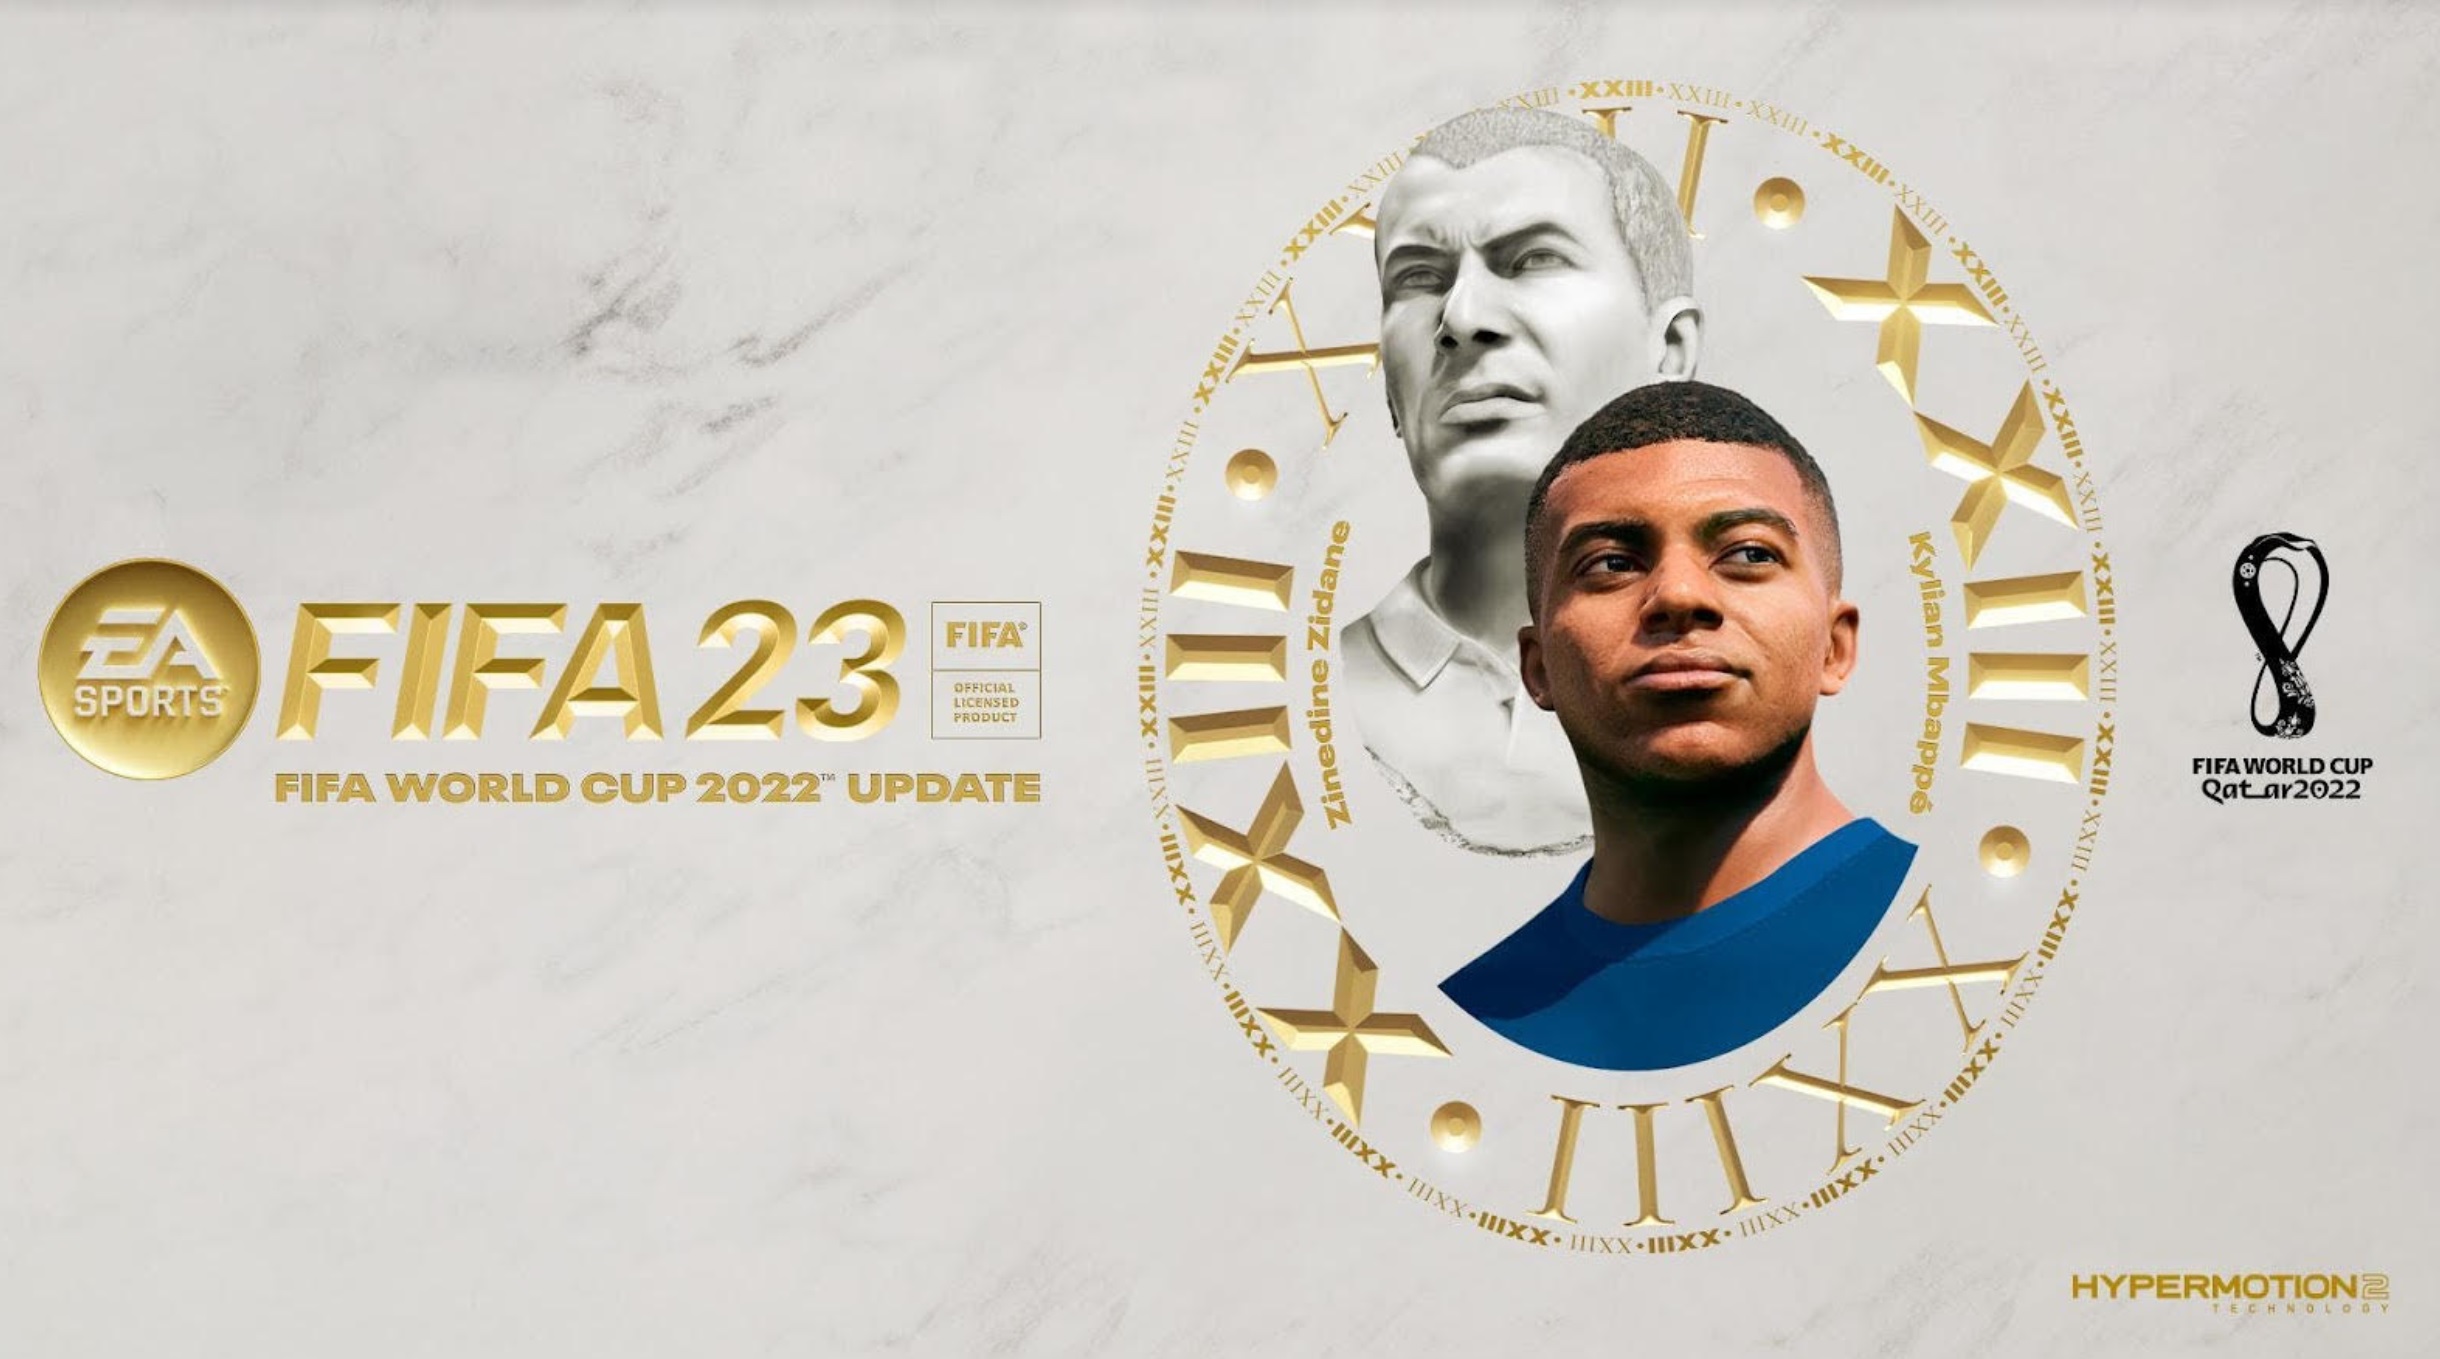 AGGIORNAMENTO EA SPORTS FIFA WORLD CUP 2022 DISPONIBILE